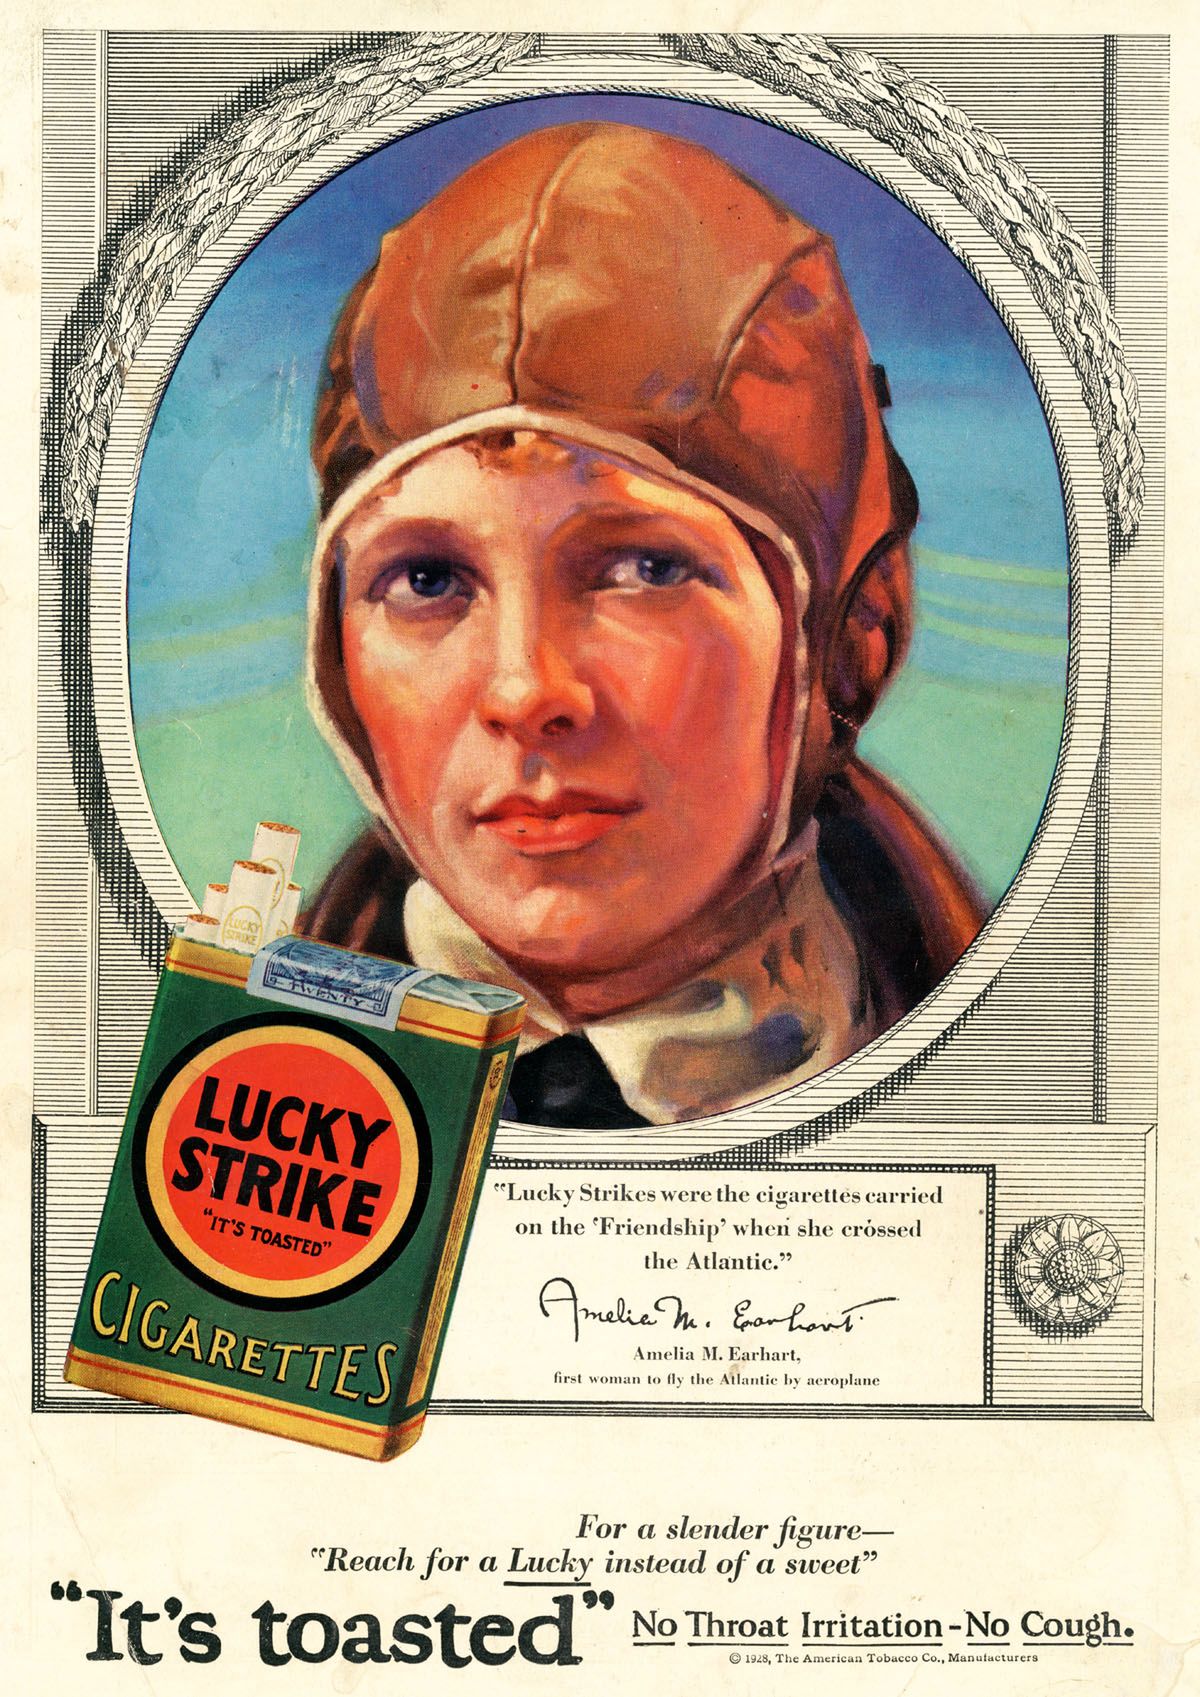 Reklama papierosów z Amelią Earhart - pionierką lotnictwa